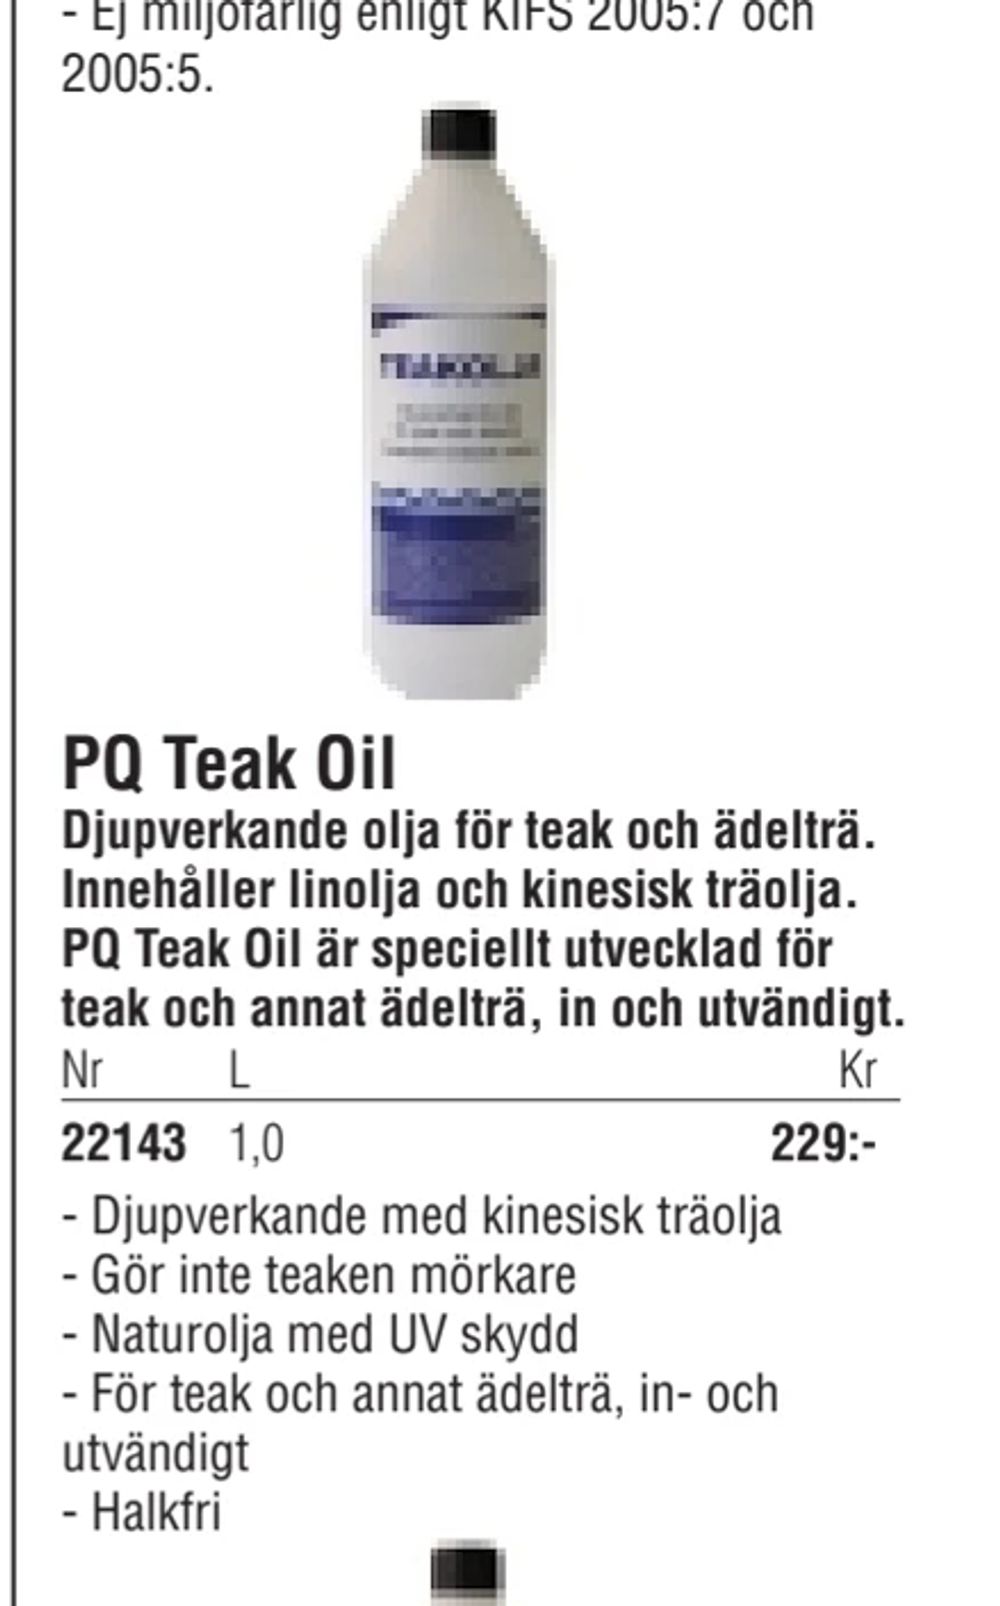 Erbjudanden på PQ Teak Oil från Erlandsons Brygga för 229 kr